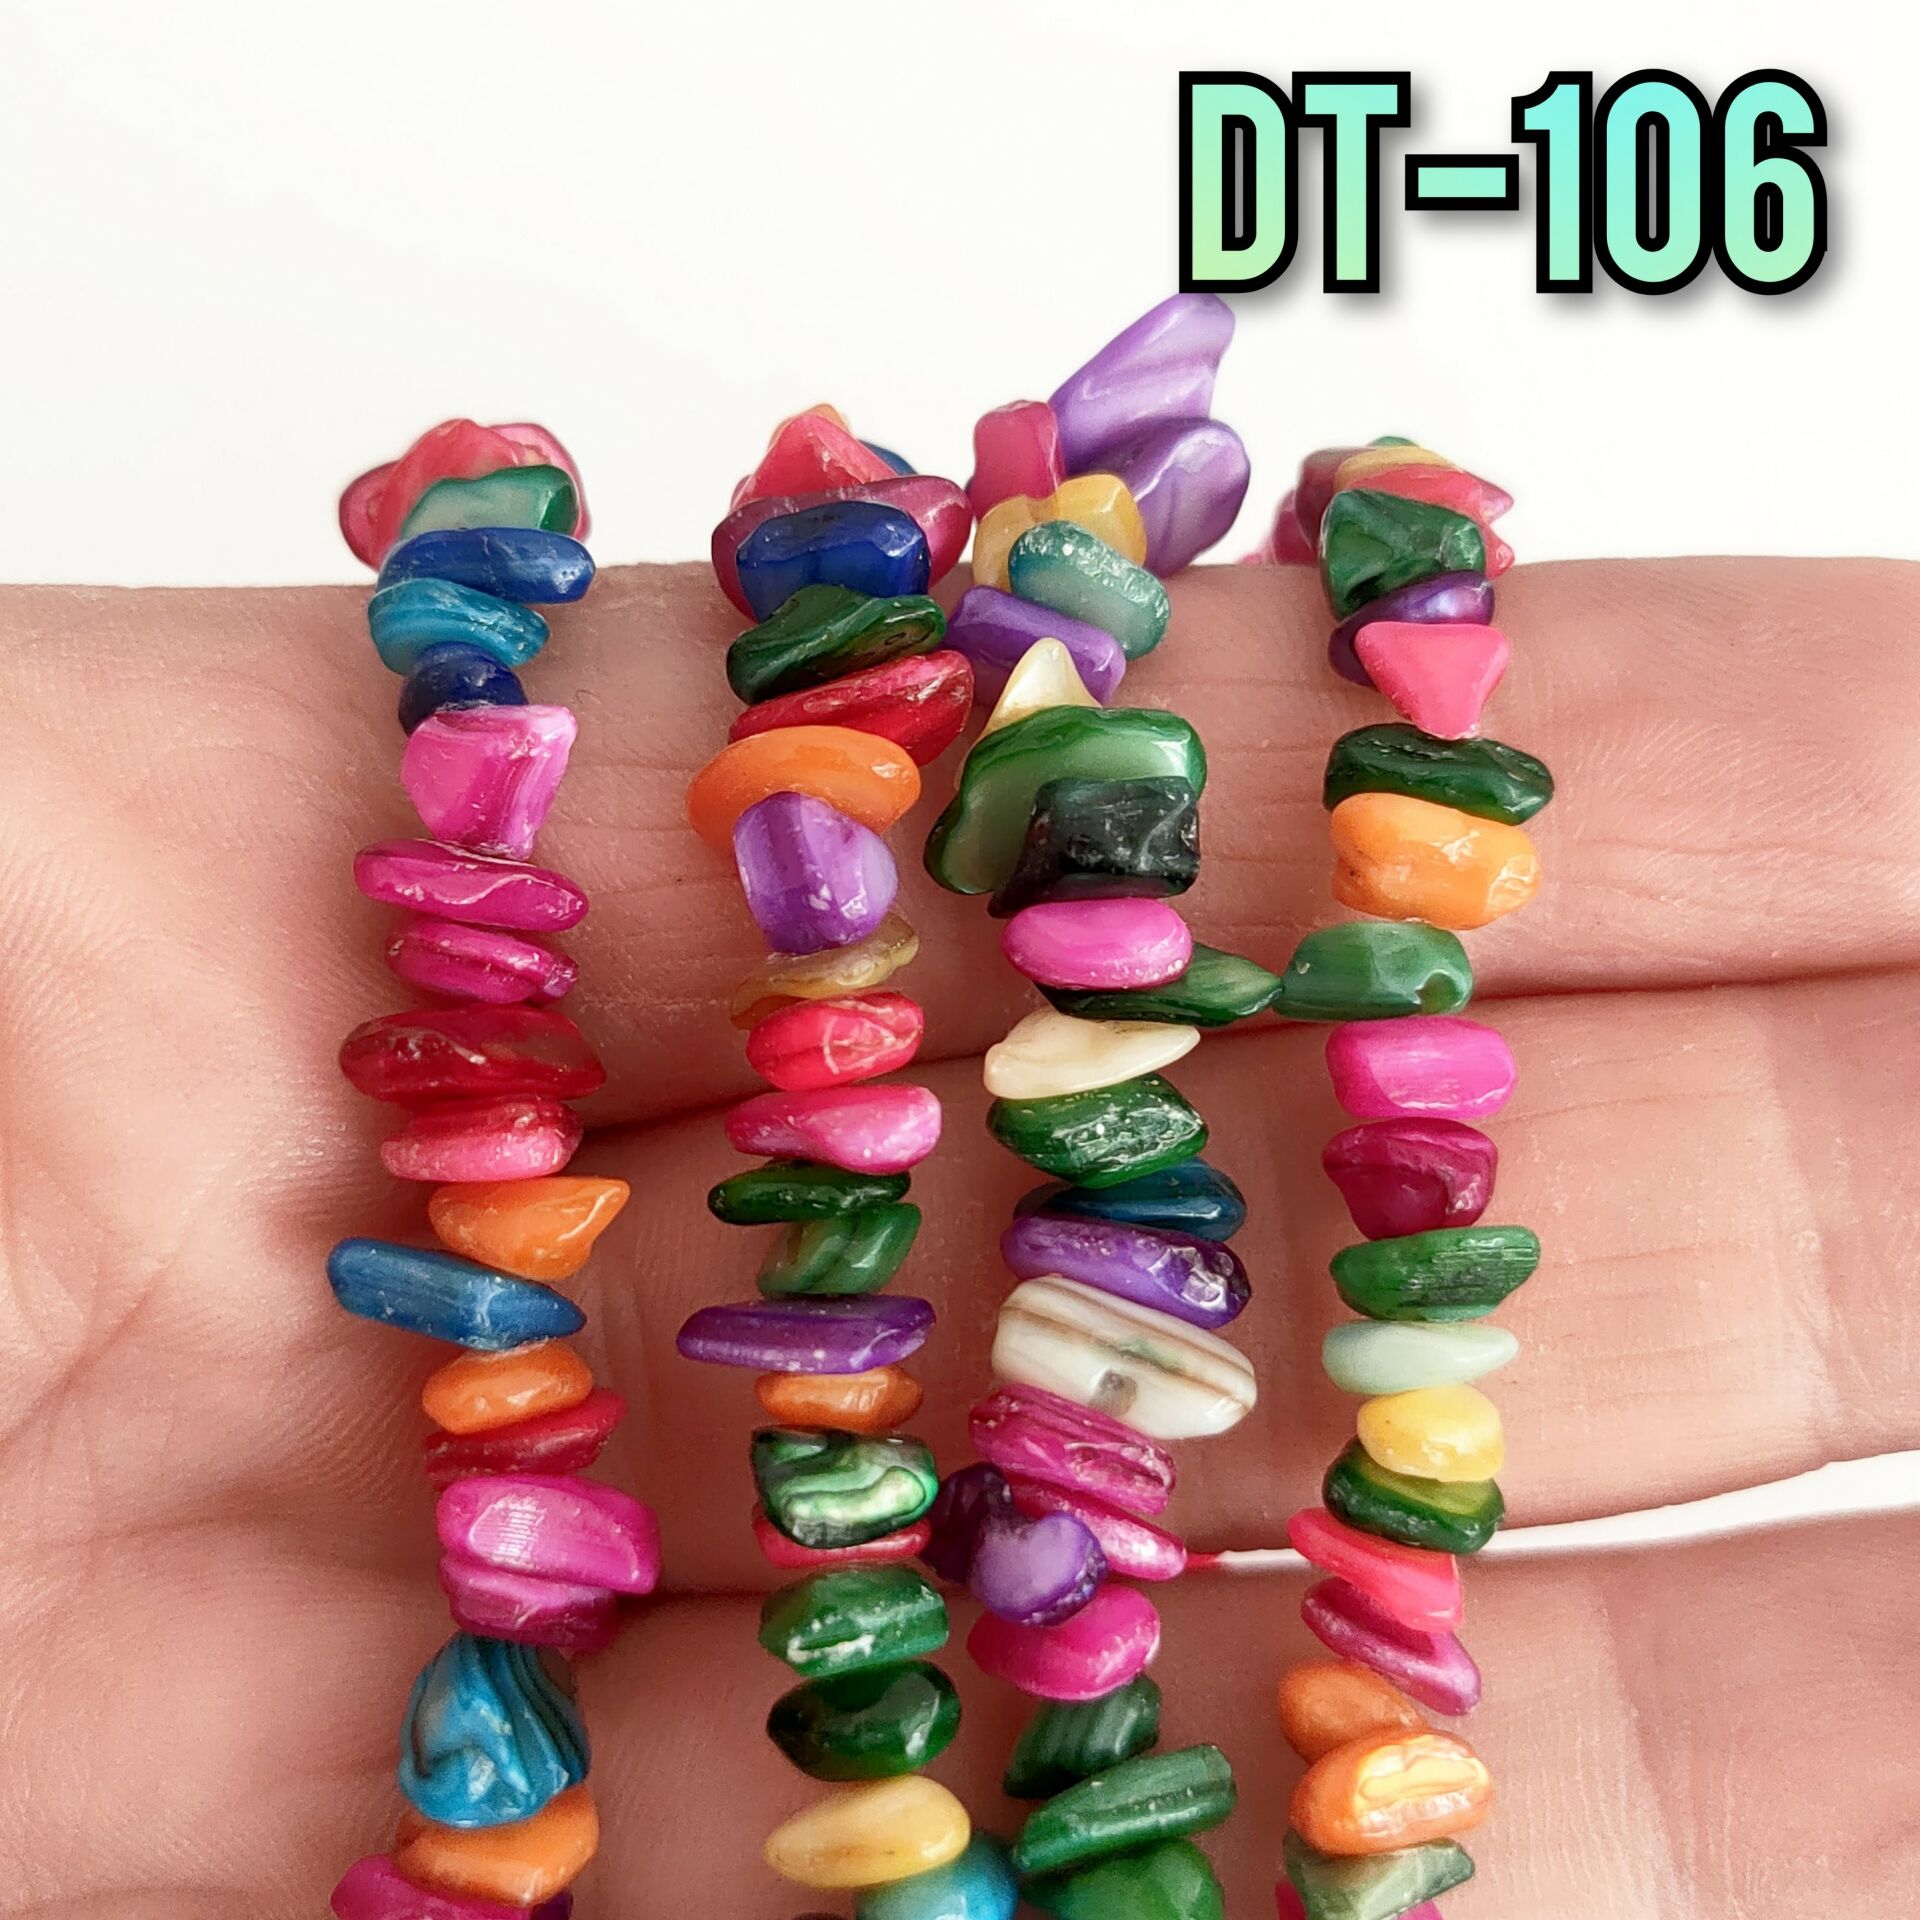 DT-106 Boyalı Sedef Karışık Renk Kırıktaş